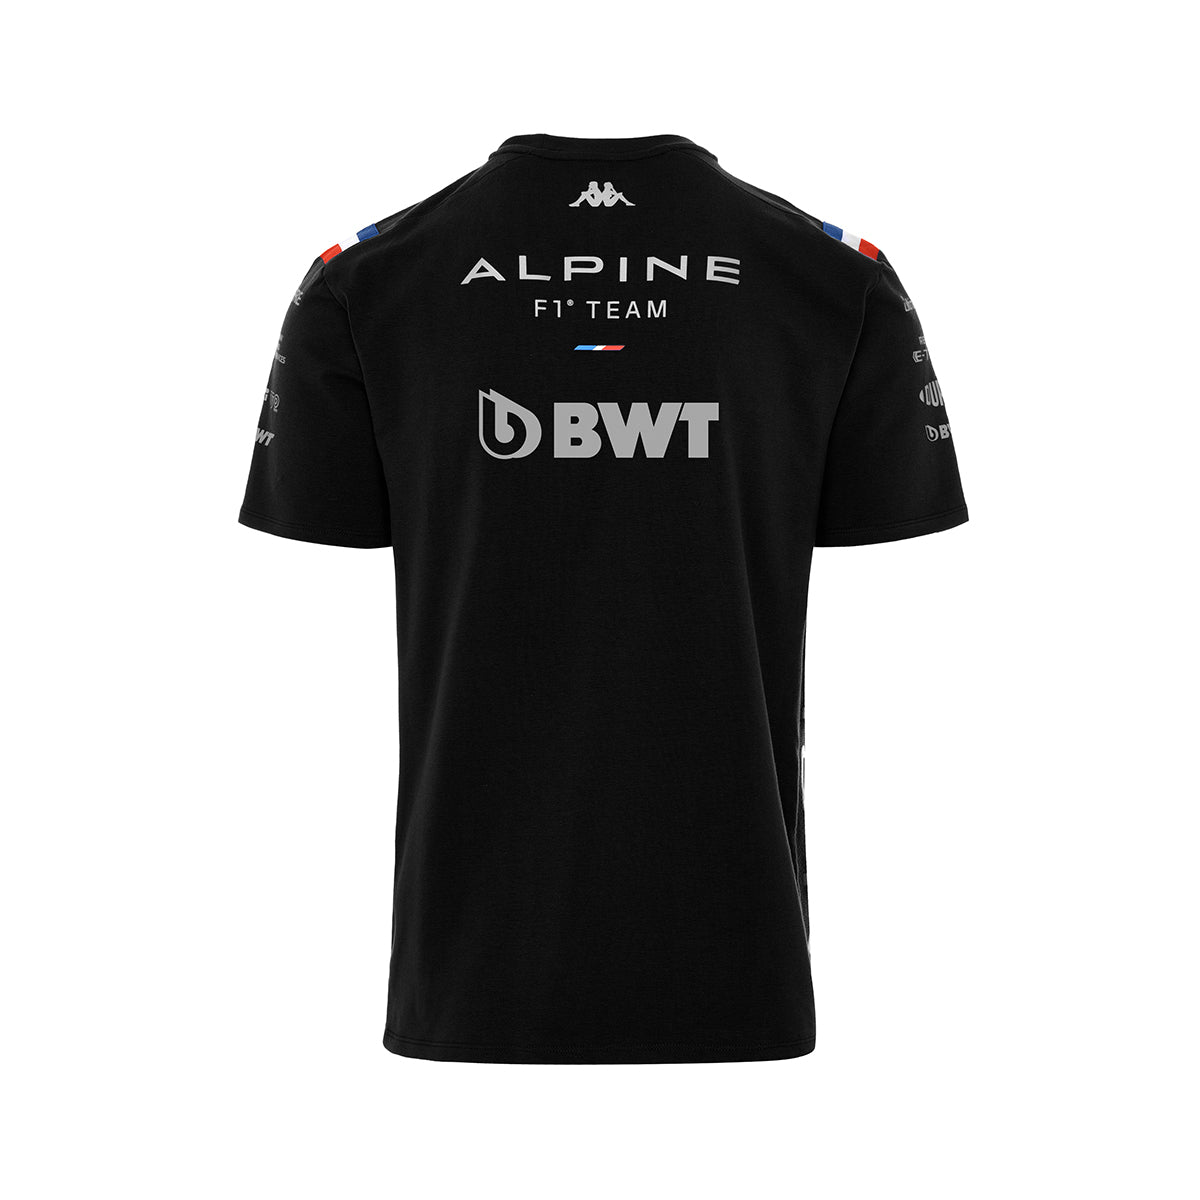 ALPINE F1 Team T-Shirt Black Kid